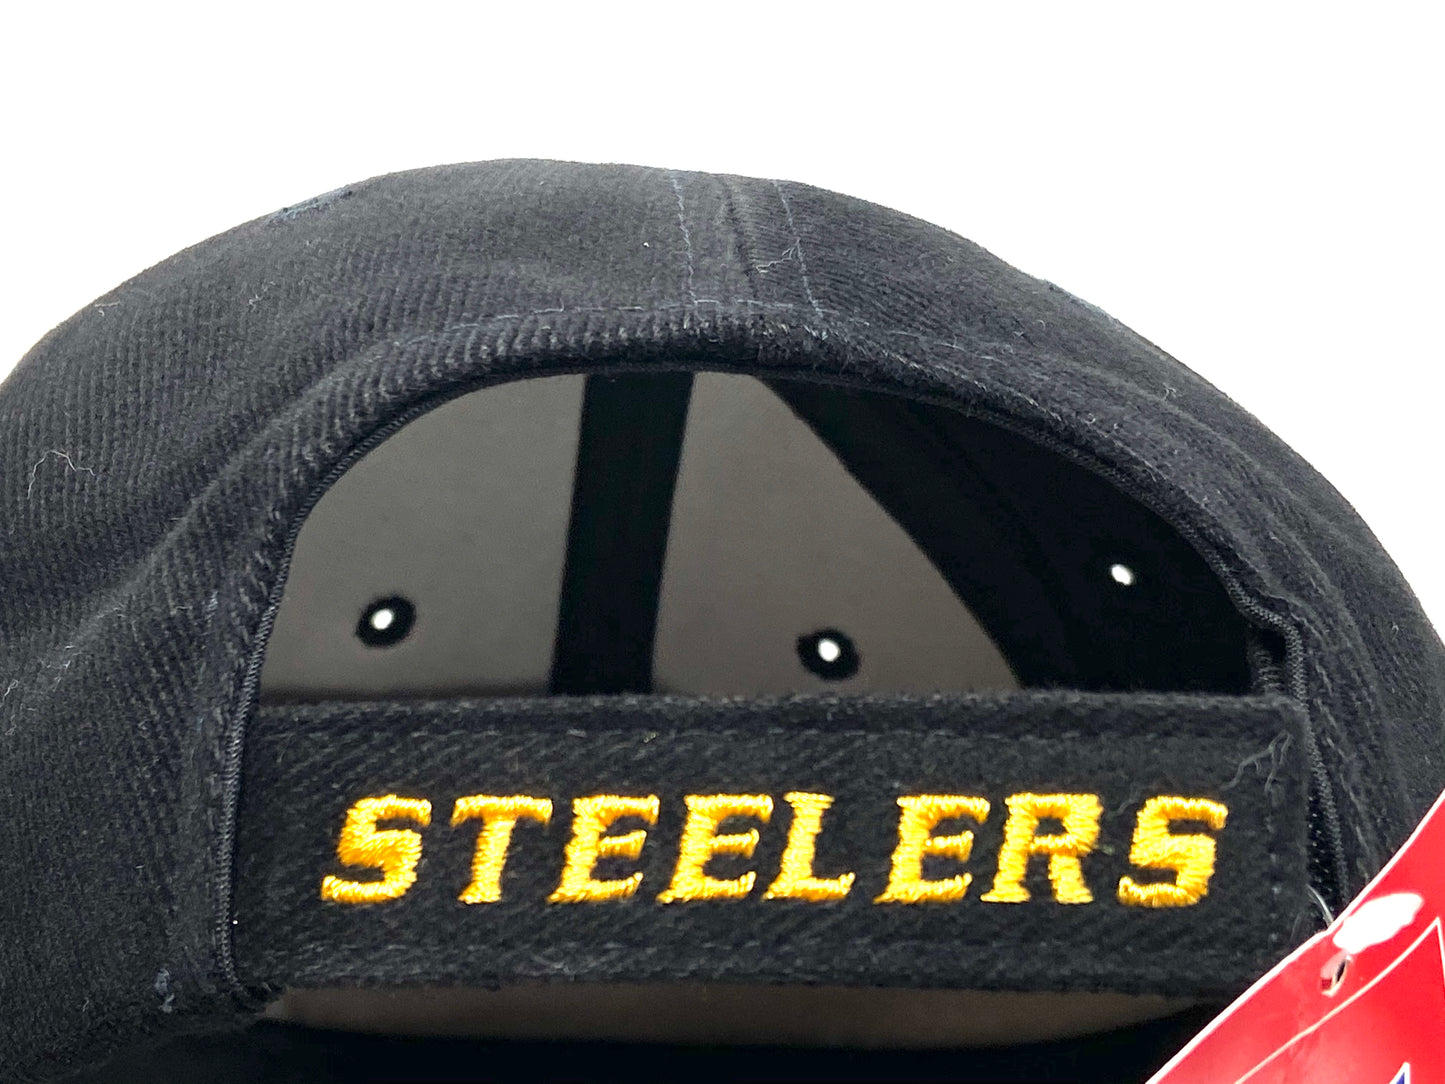 Pittsburgh Steelers Vintage Adult NFL Black Logo Cap